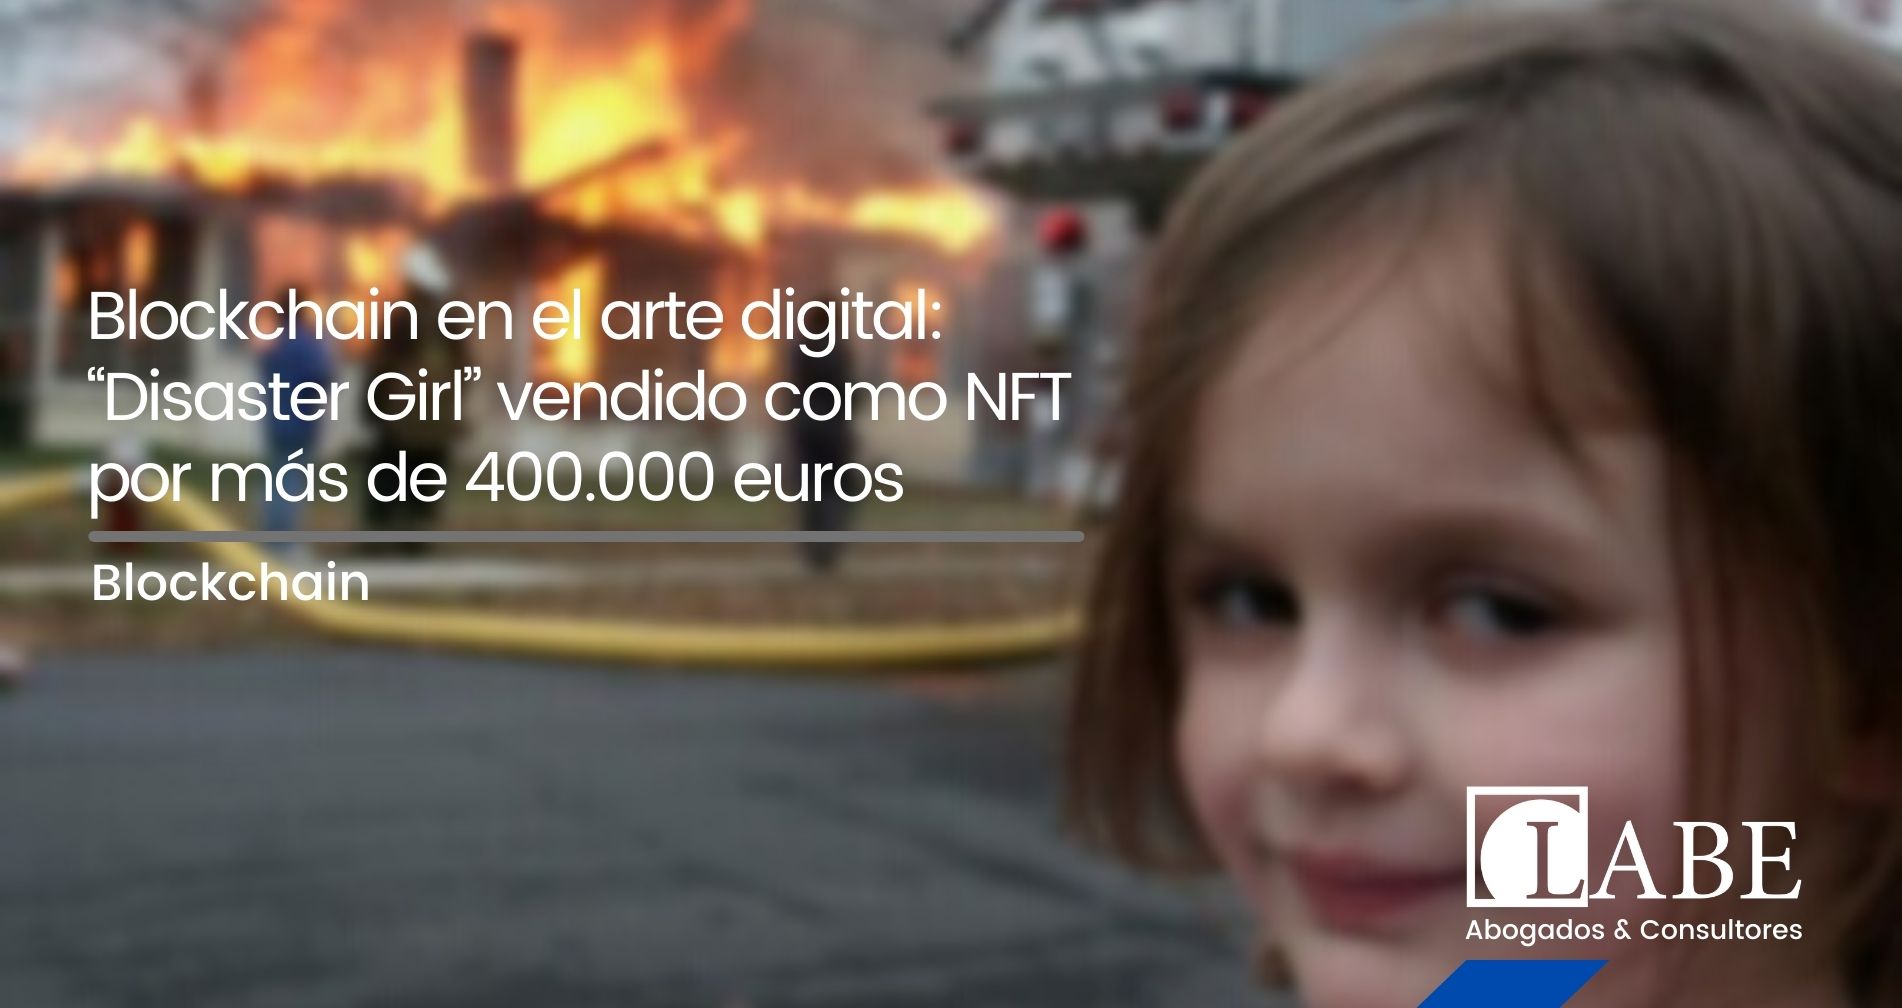 Blockchain en el arte digital: “Disaster Girl” vendido como NFT por más de 400.000 euros